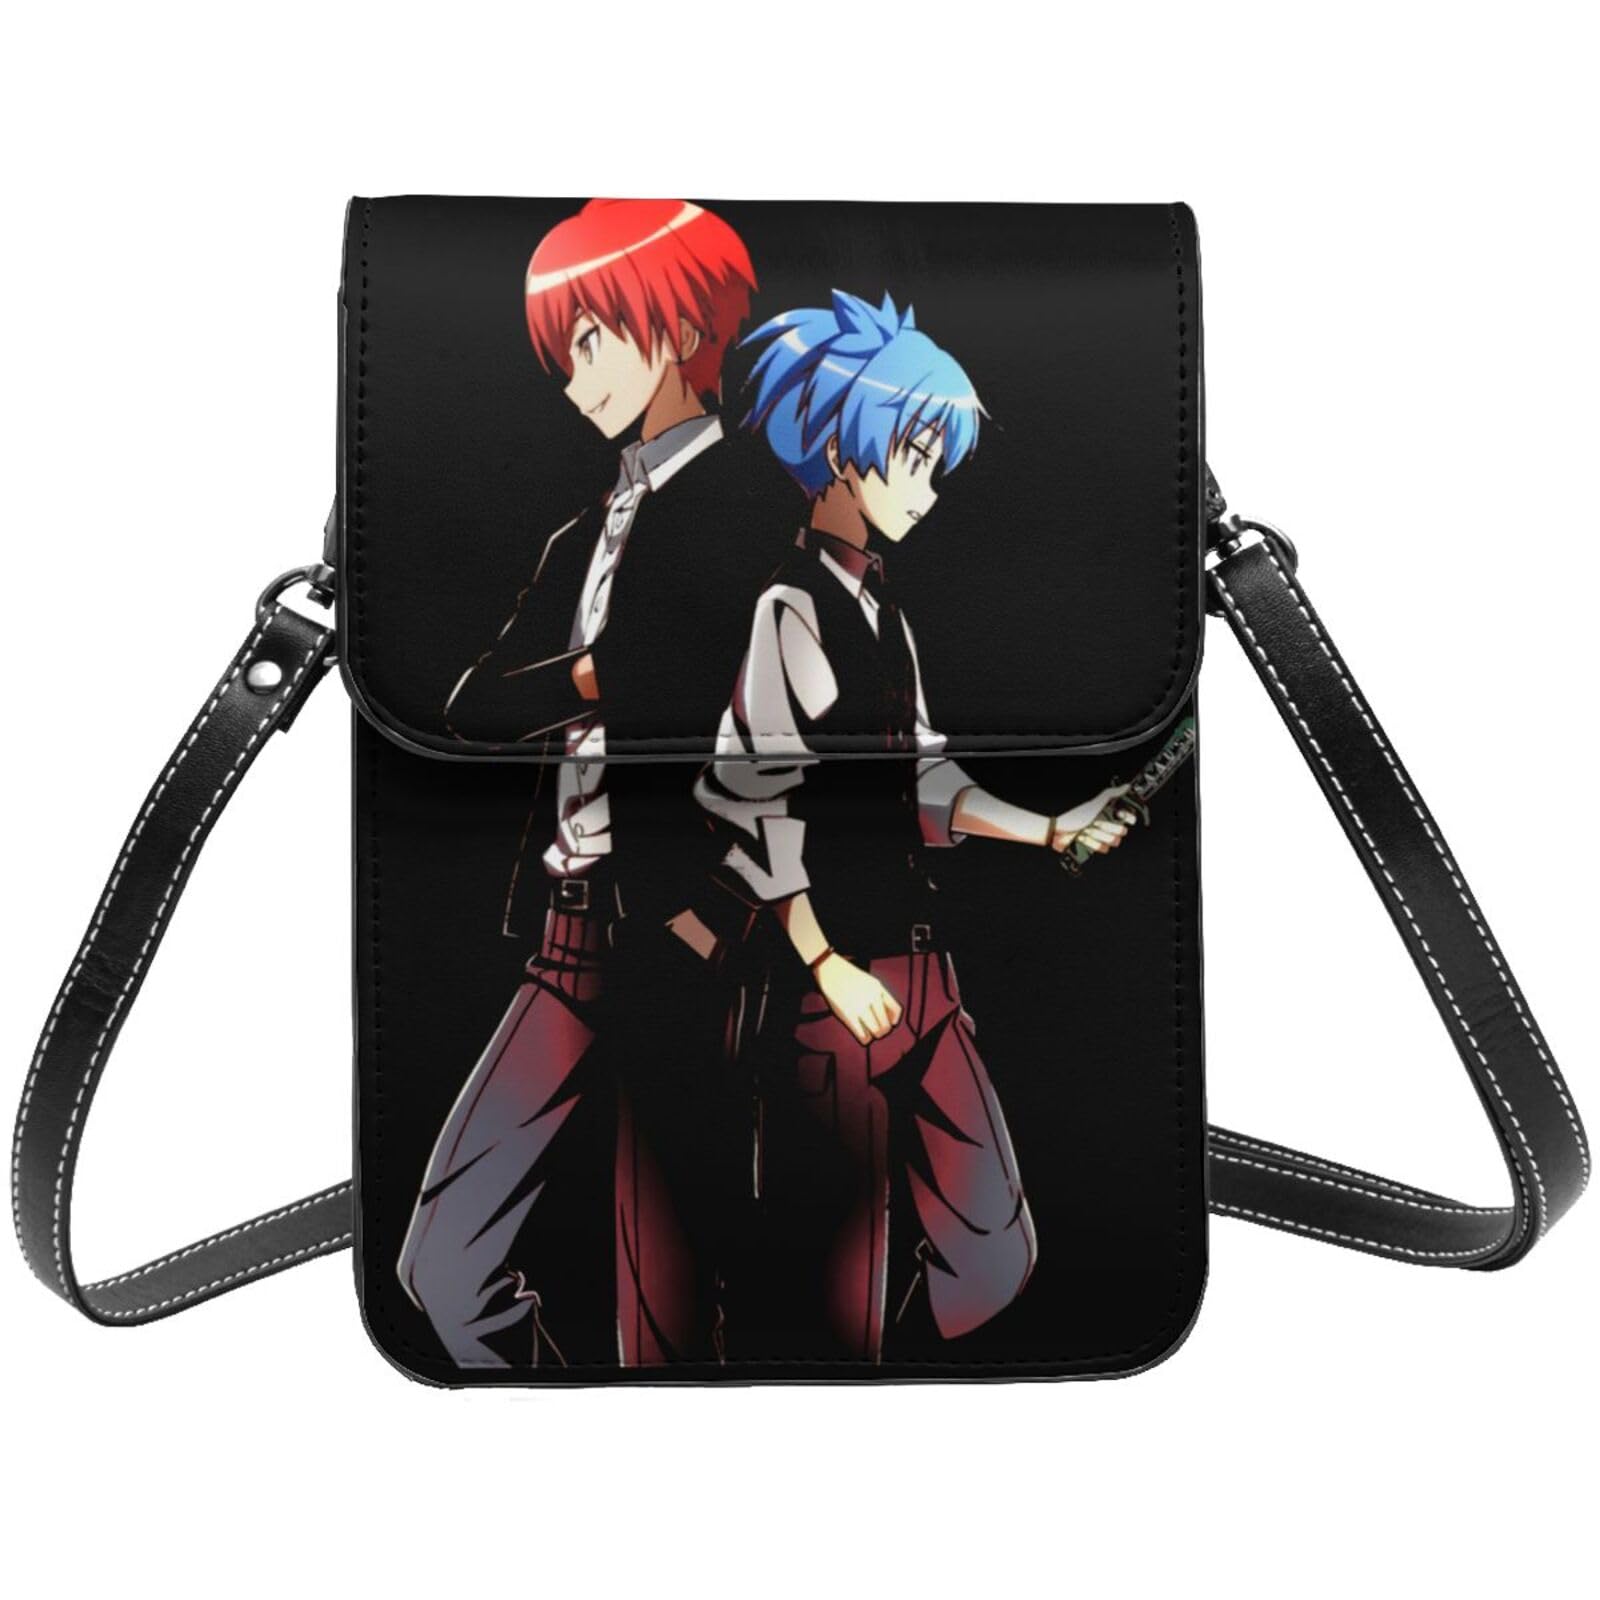 Anime Crossbody Bags | Mercari